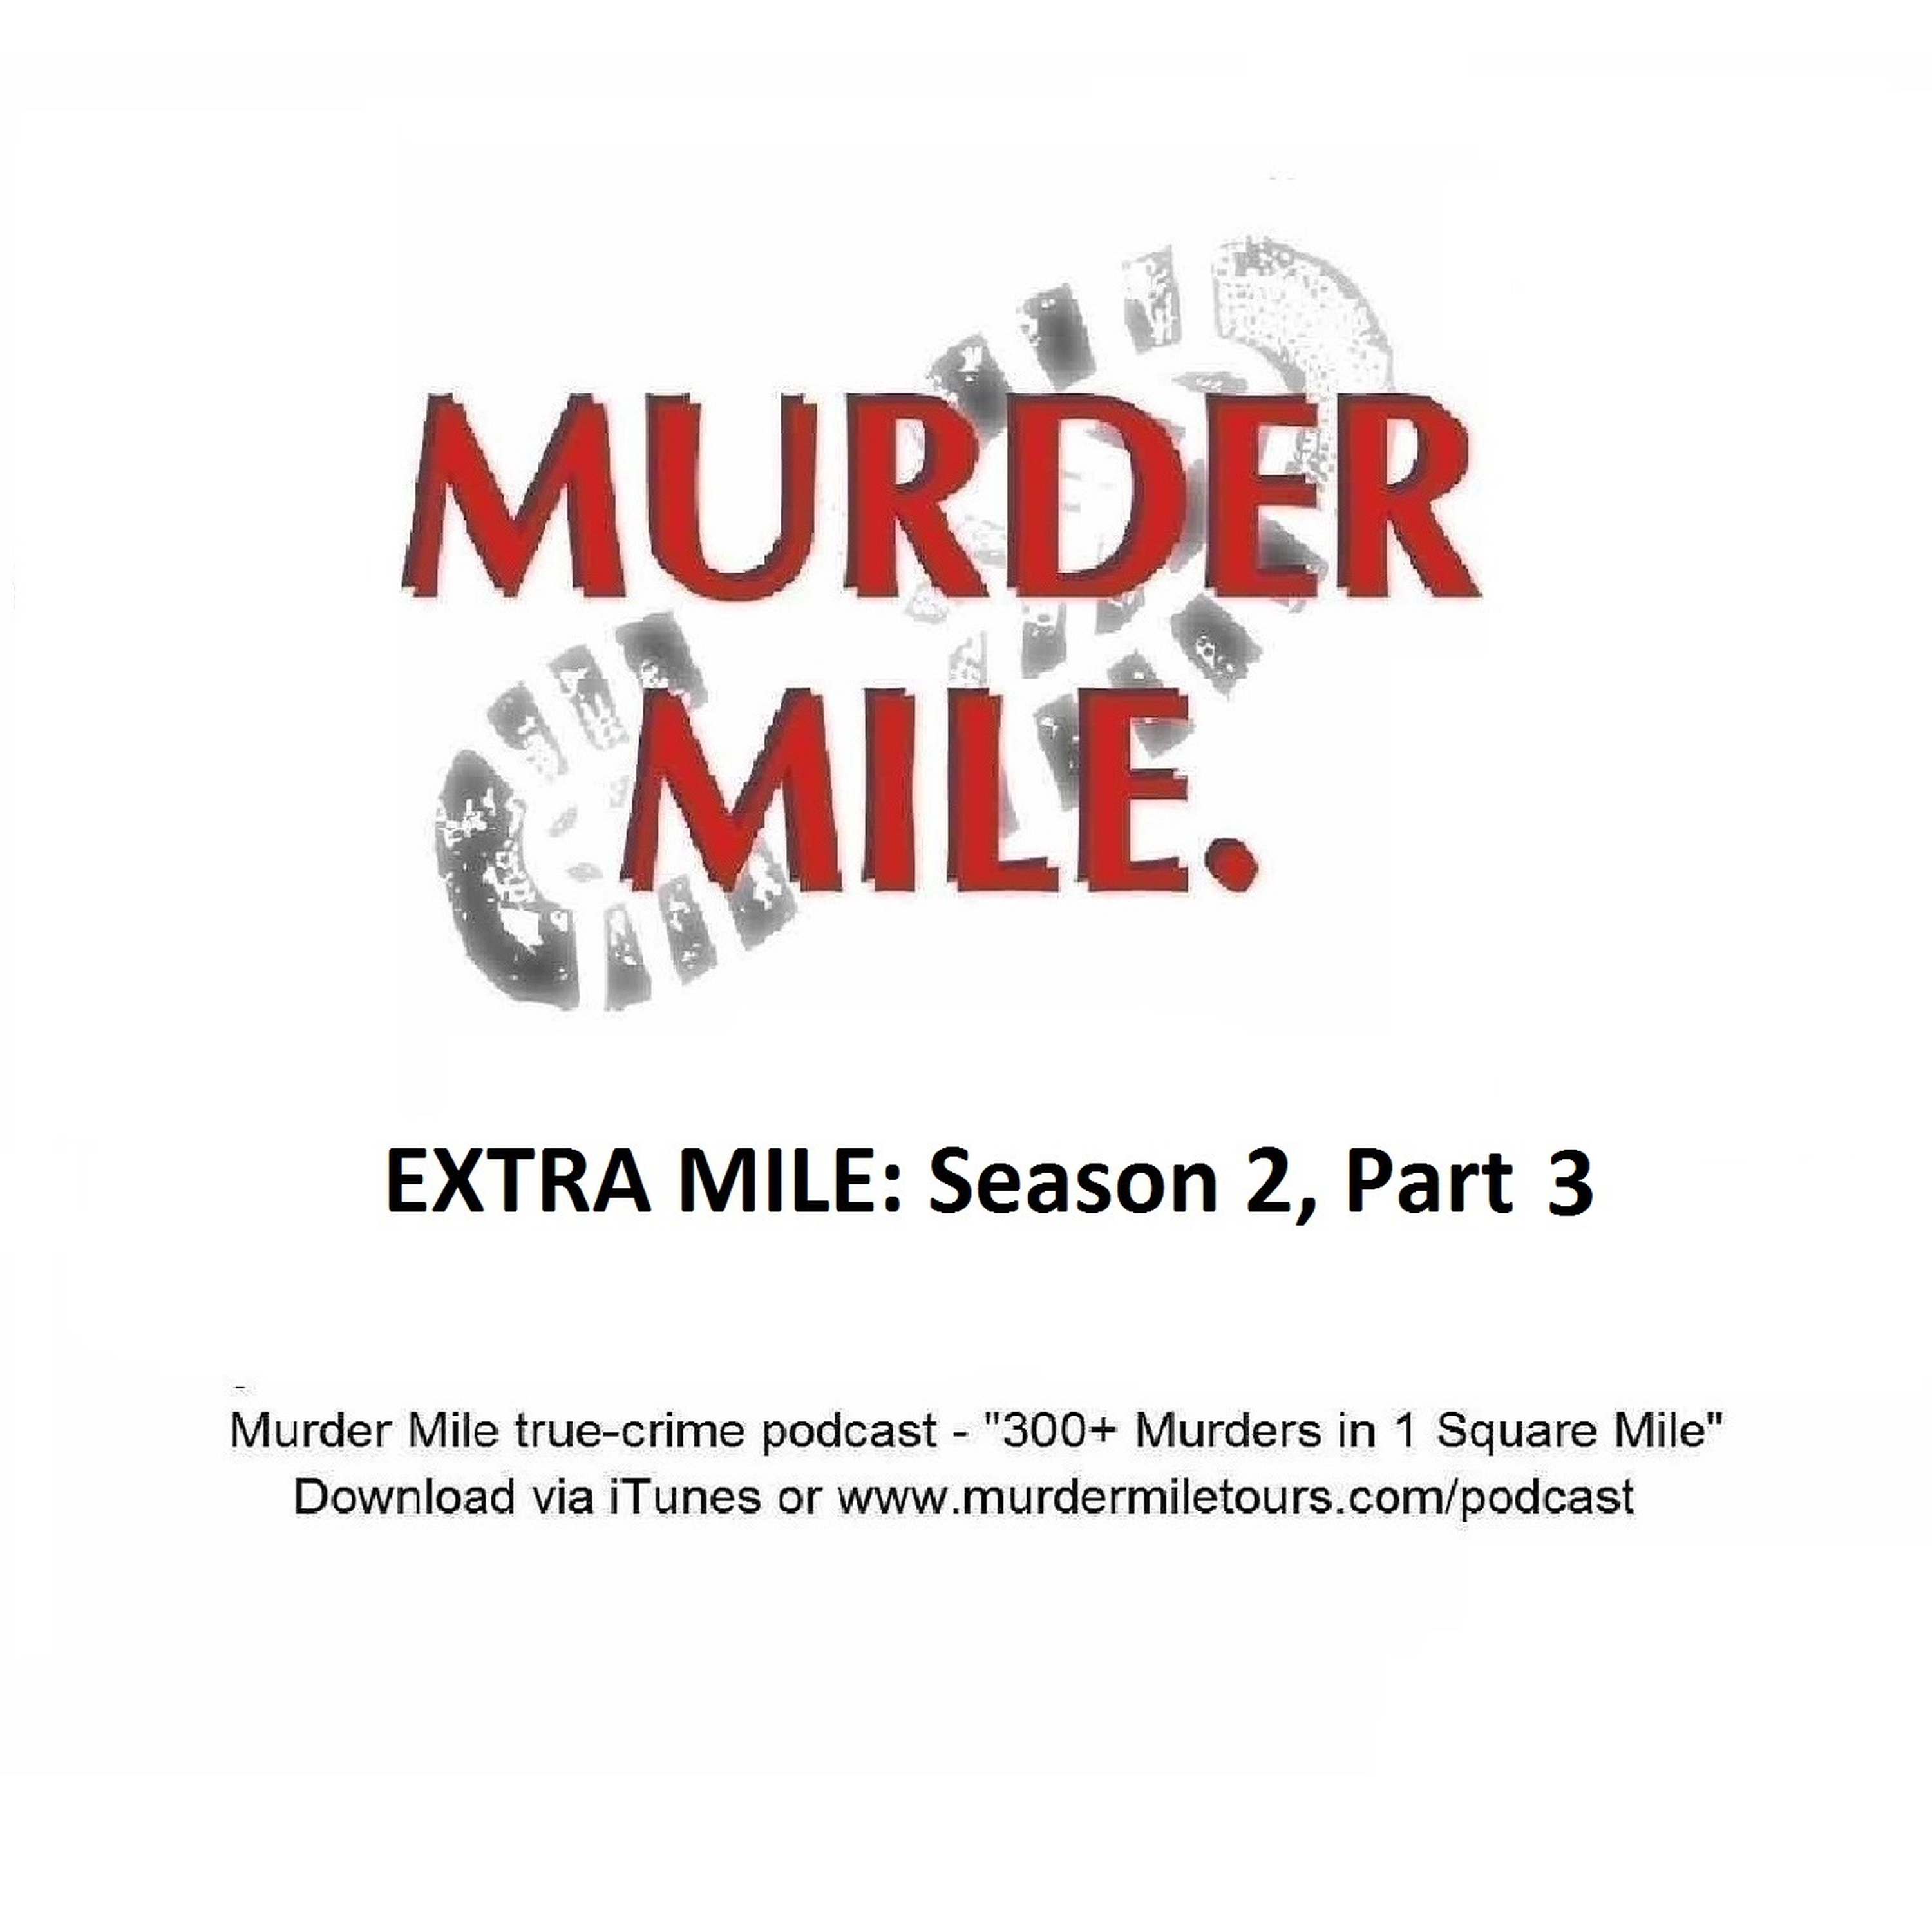 Extra Mile: Season 2, Part 3